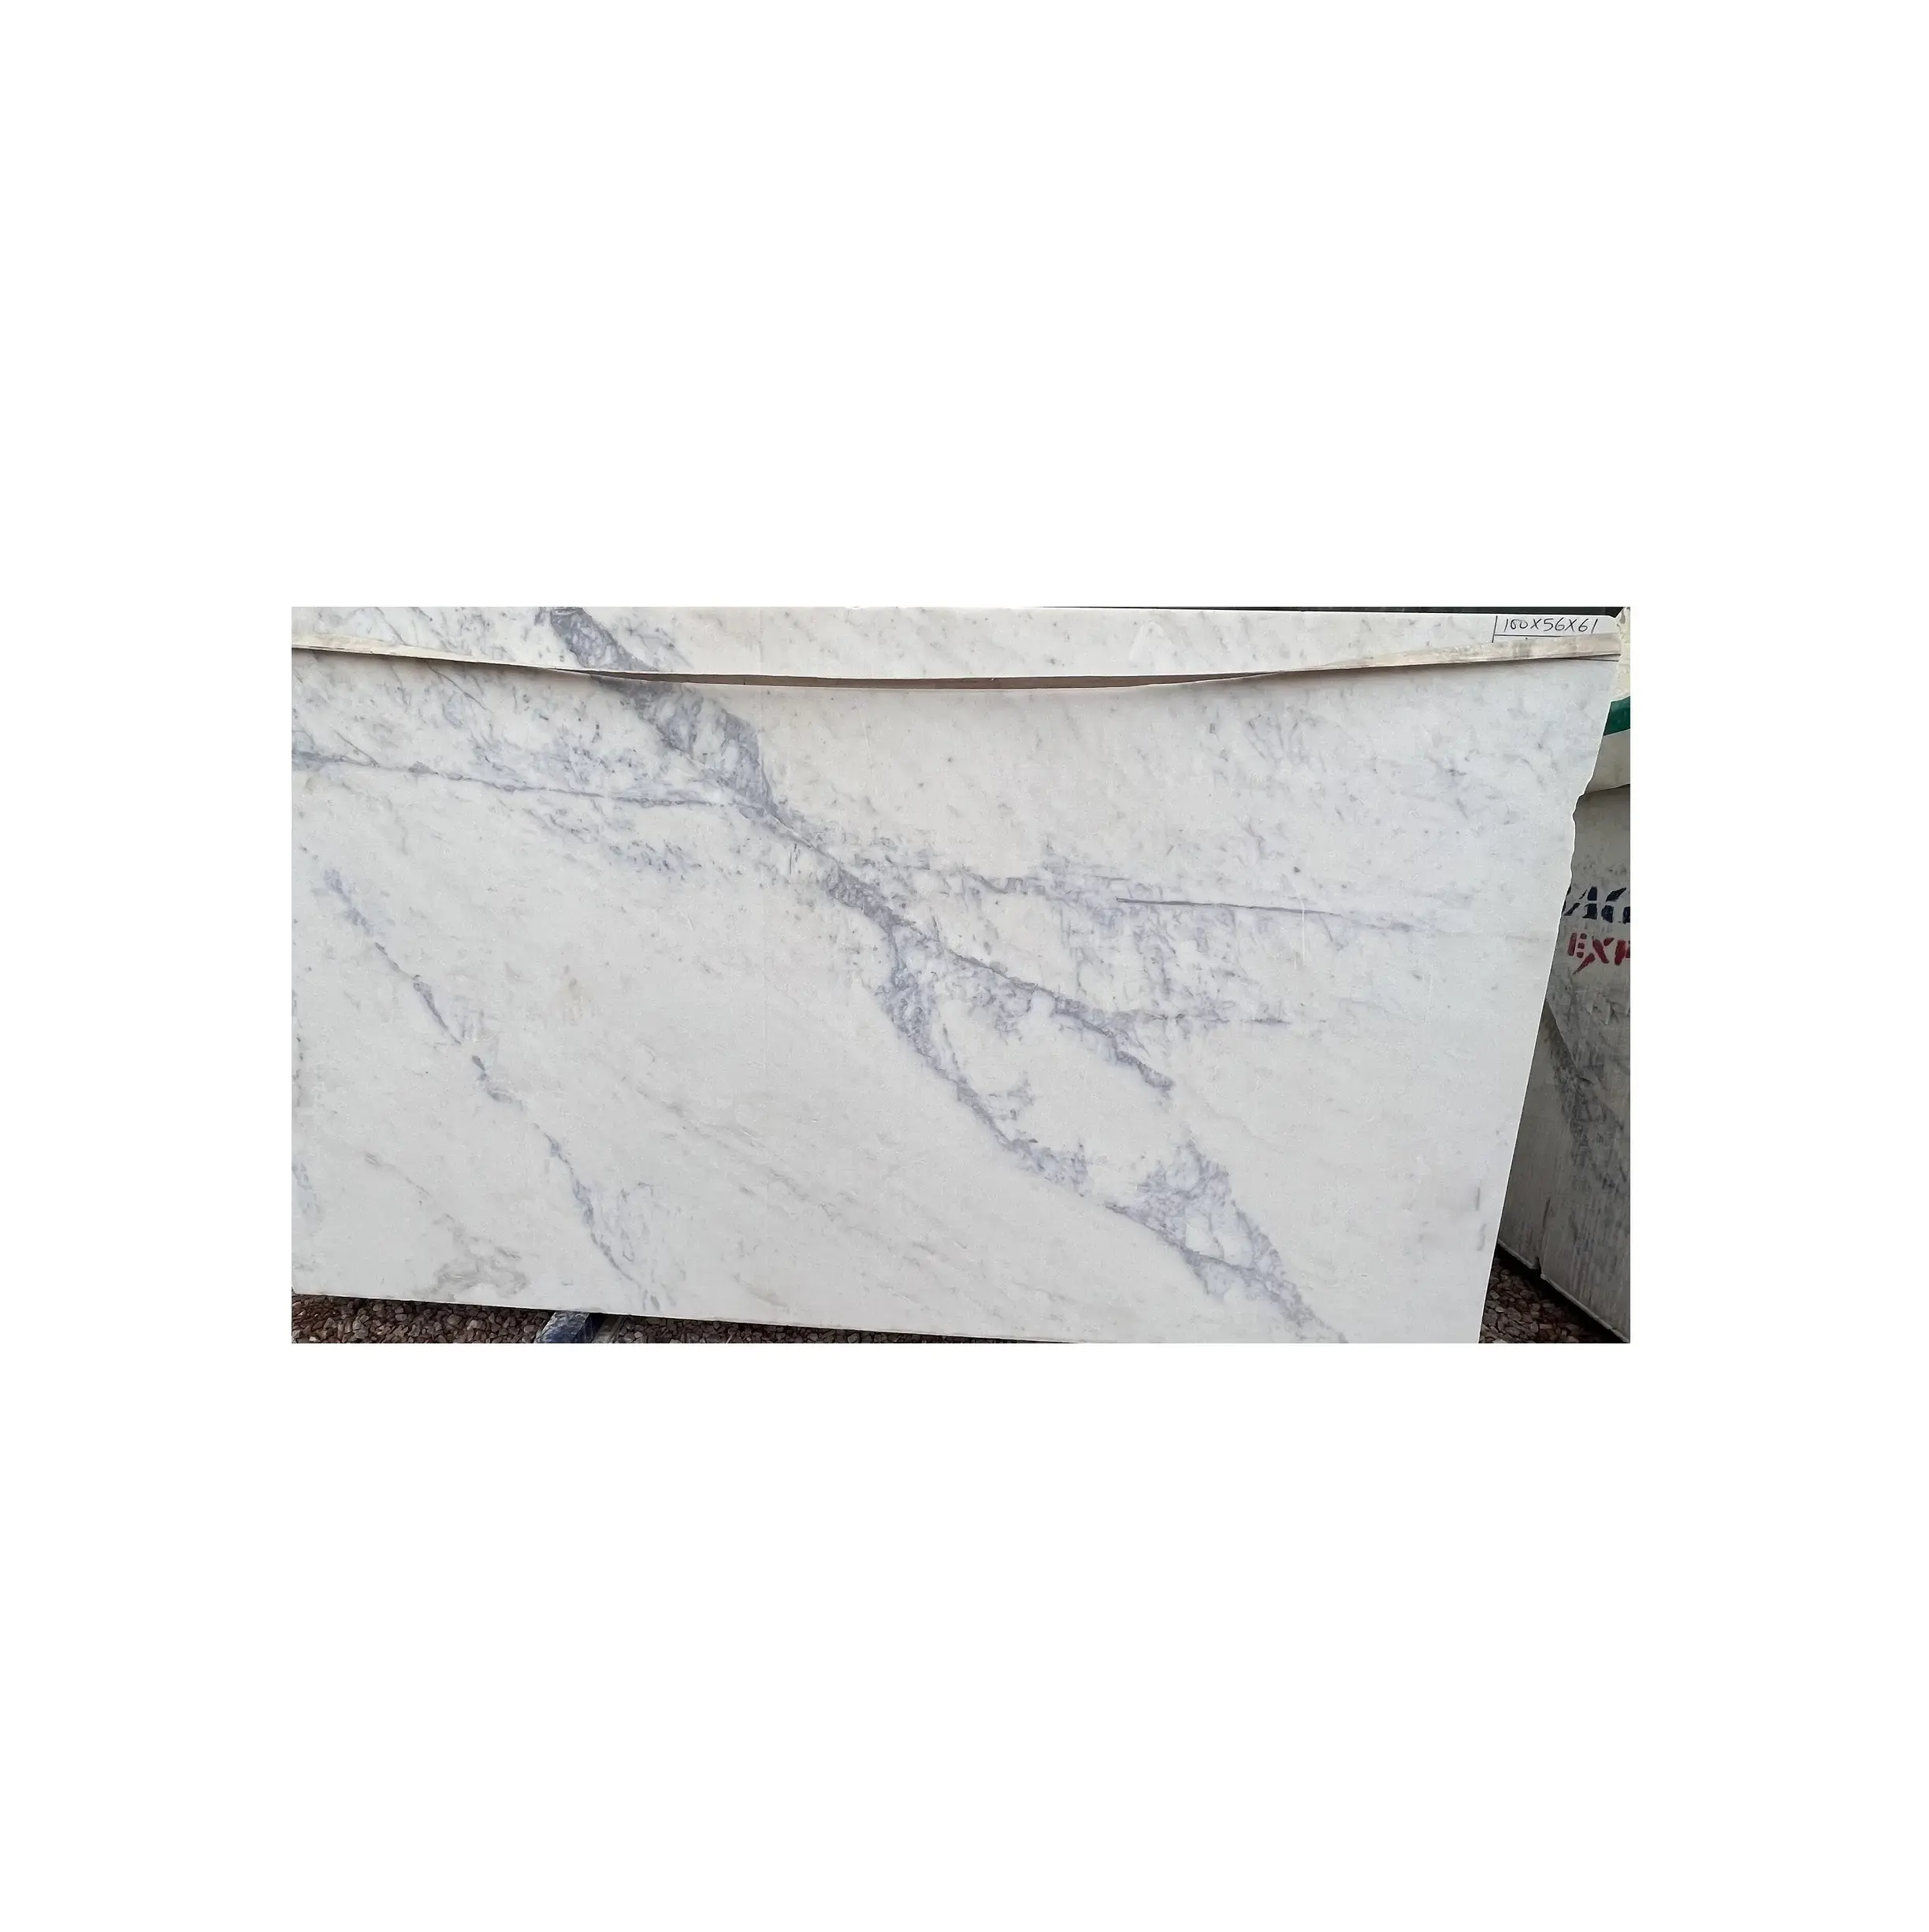 La pierre naturelle en marbre blanc Banswara le plus désirable peut être utilisée dans les cuisines et les salles de bain.